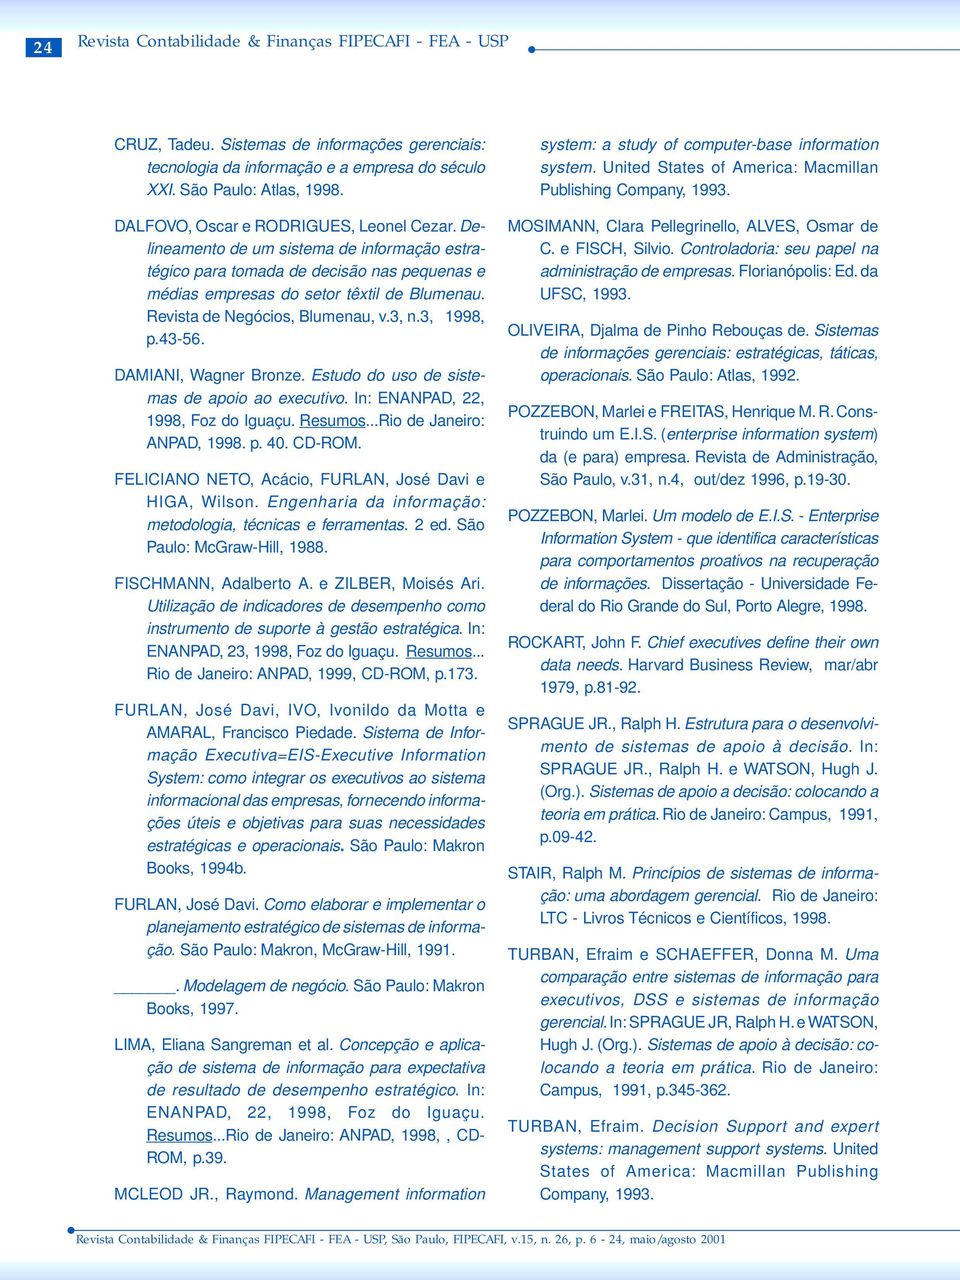 Delineamento de um sistema de informação estratégico para tomada de decisão nas pequenas e médias empresas do setor têxtil de Blumenau. Revista de Negócios, Blumenau, v.3, n.3, 1998, p.43-56.